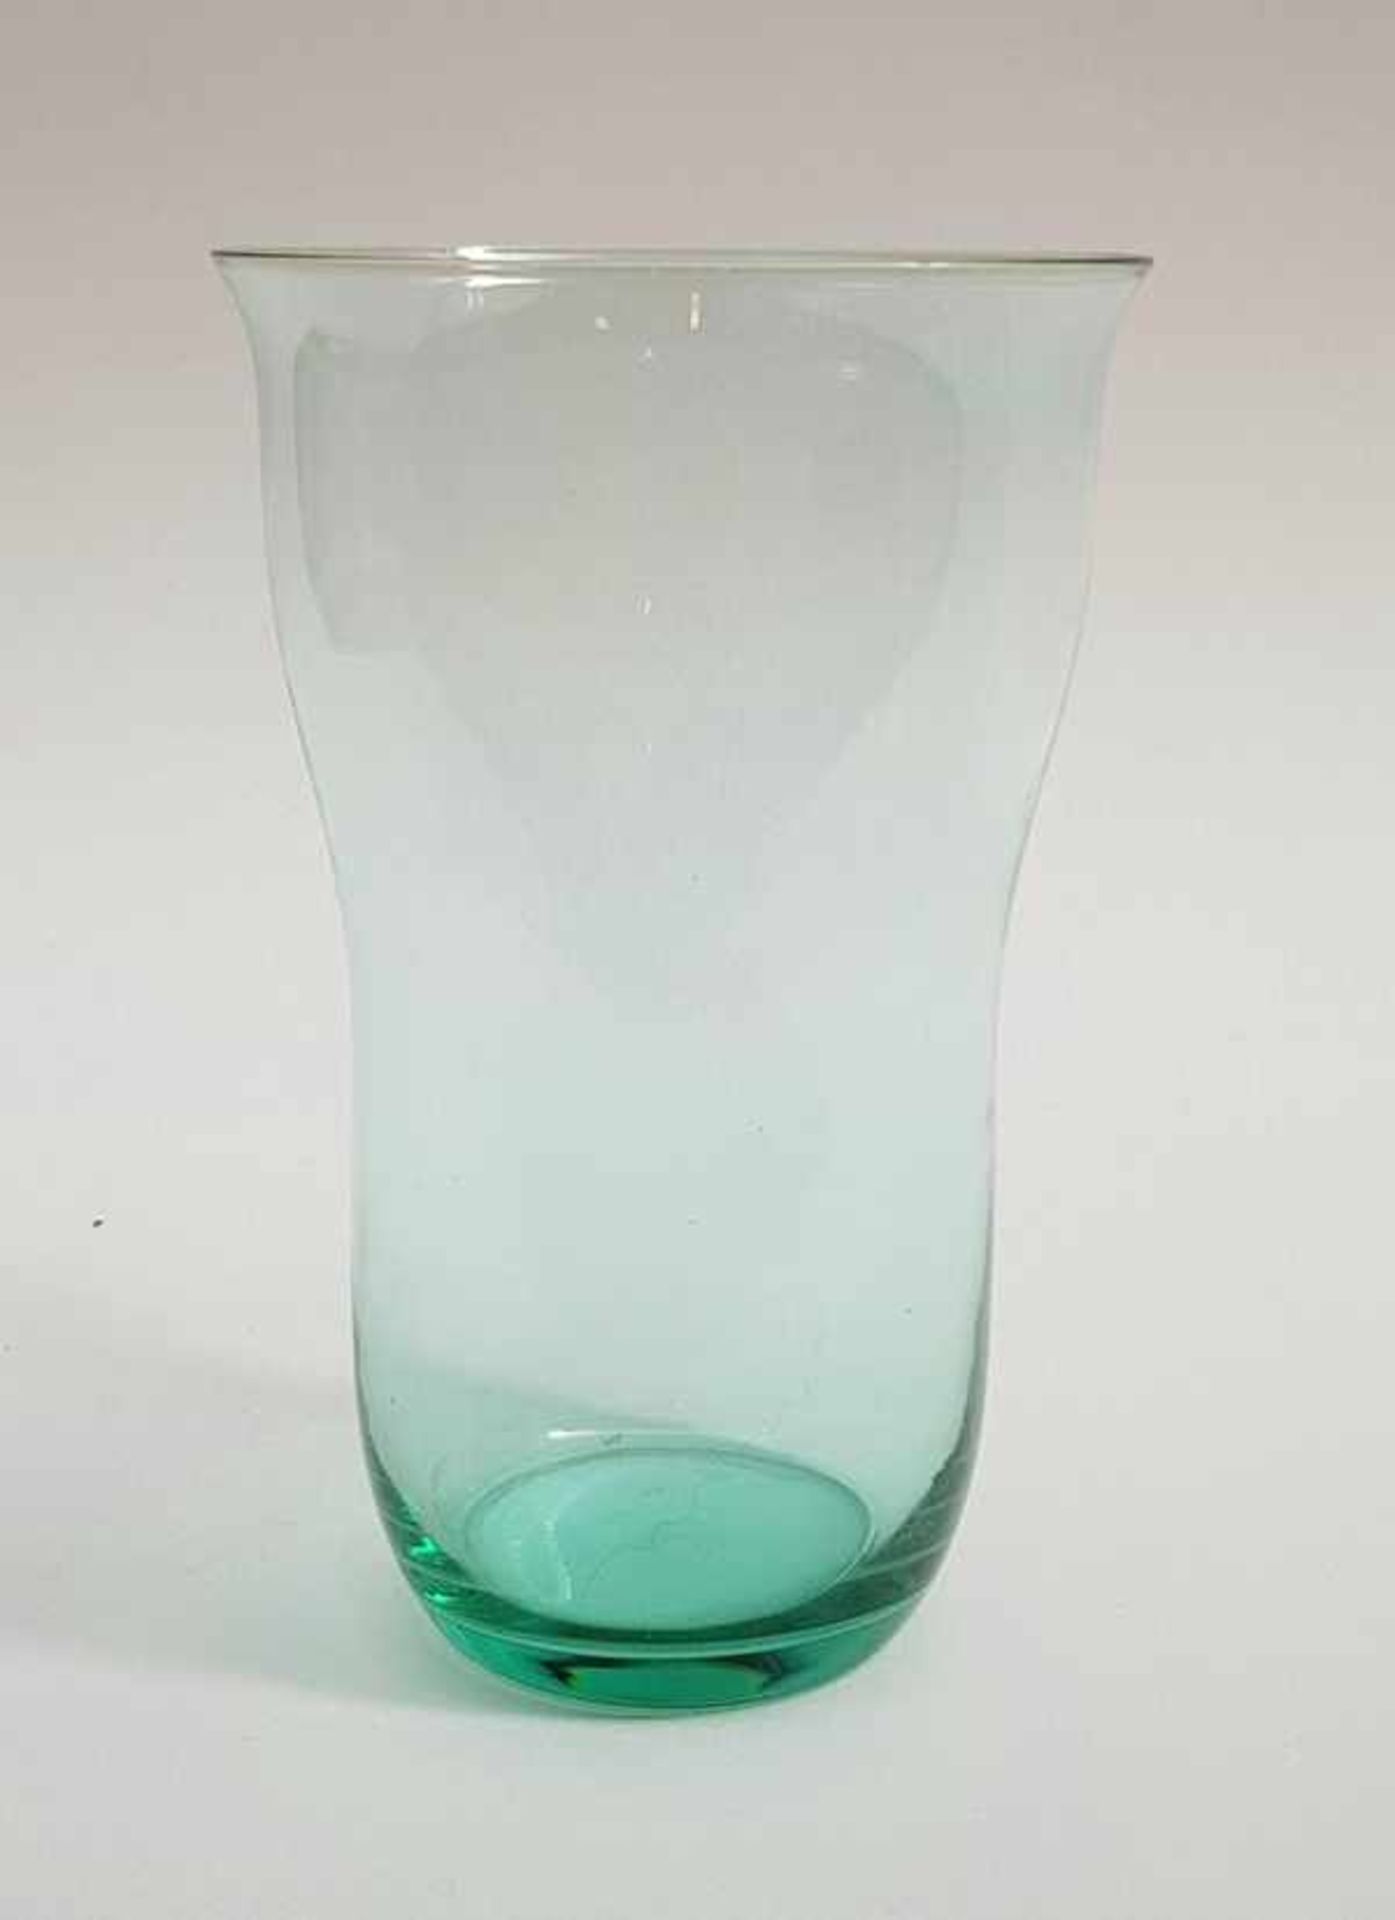 (Toegepaste kunst) Waterglas Jaap Gidding, LeerdamTurquoise waterglas, ontworpen door Jaap